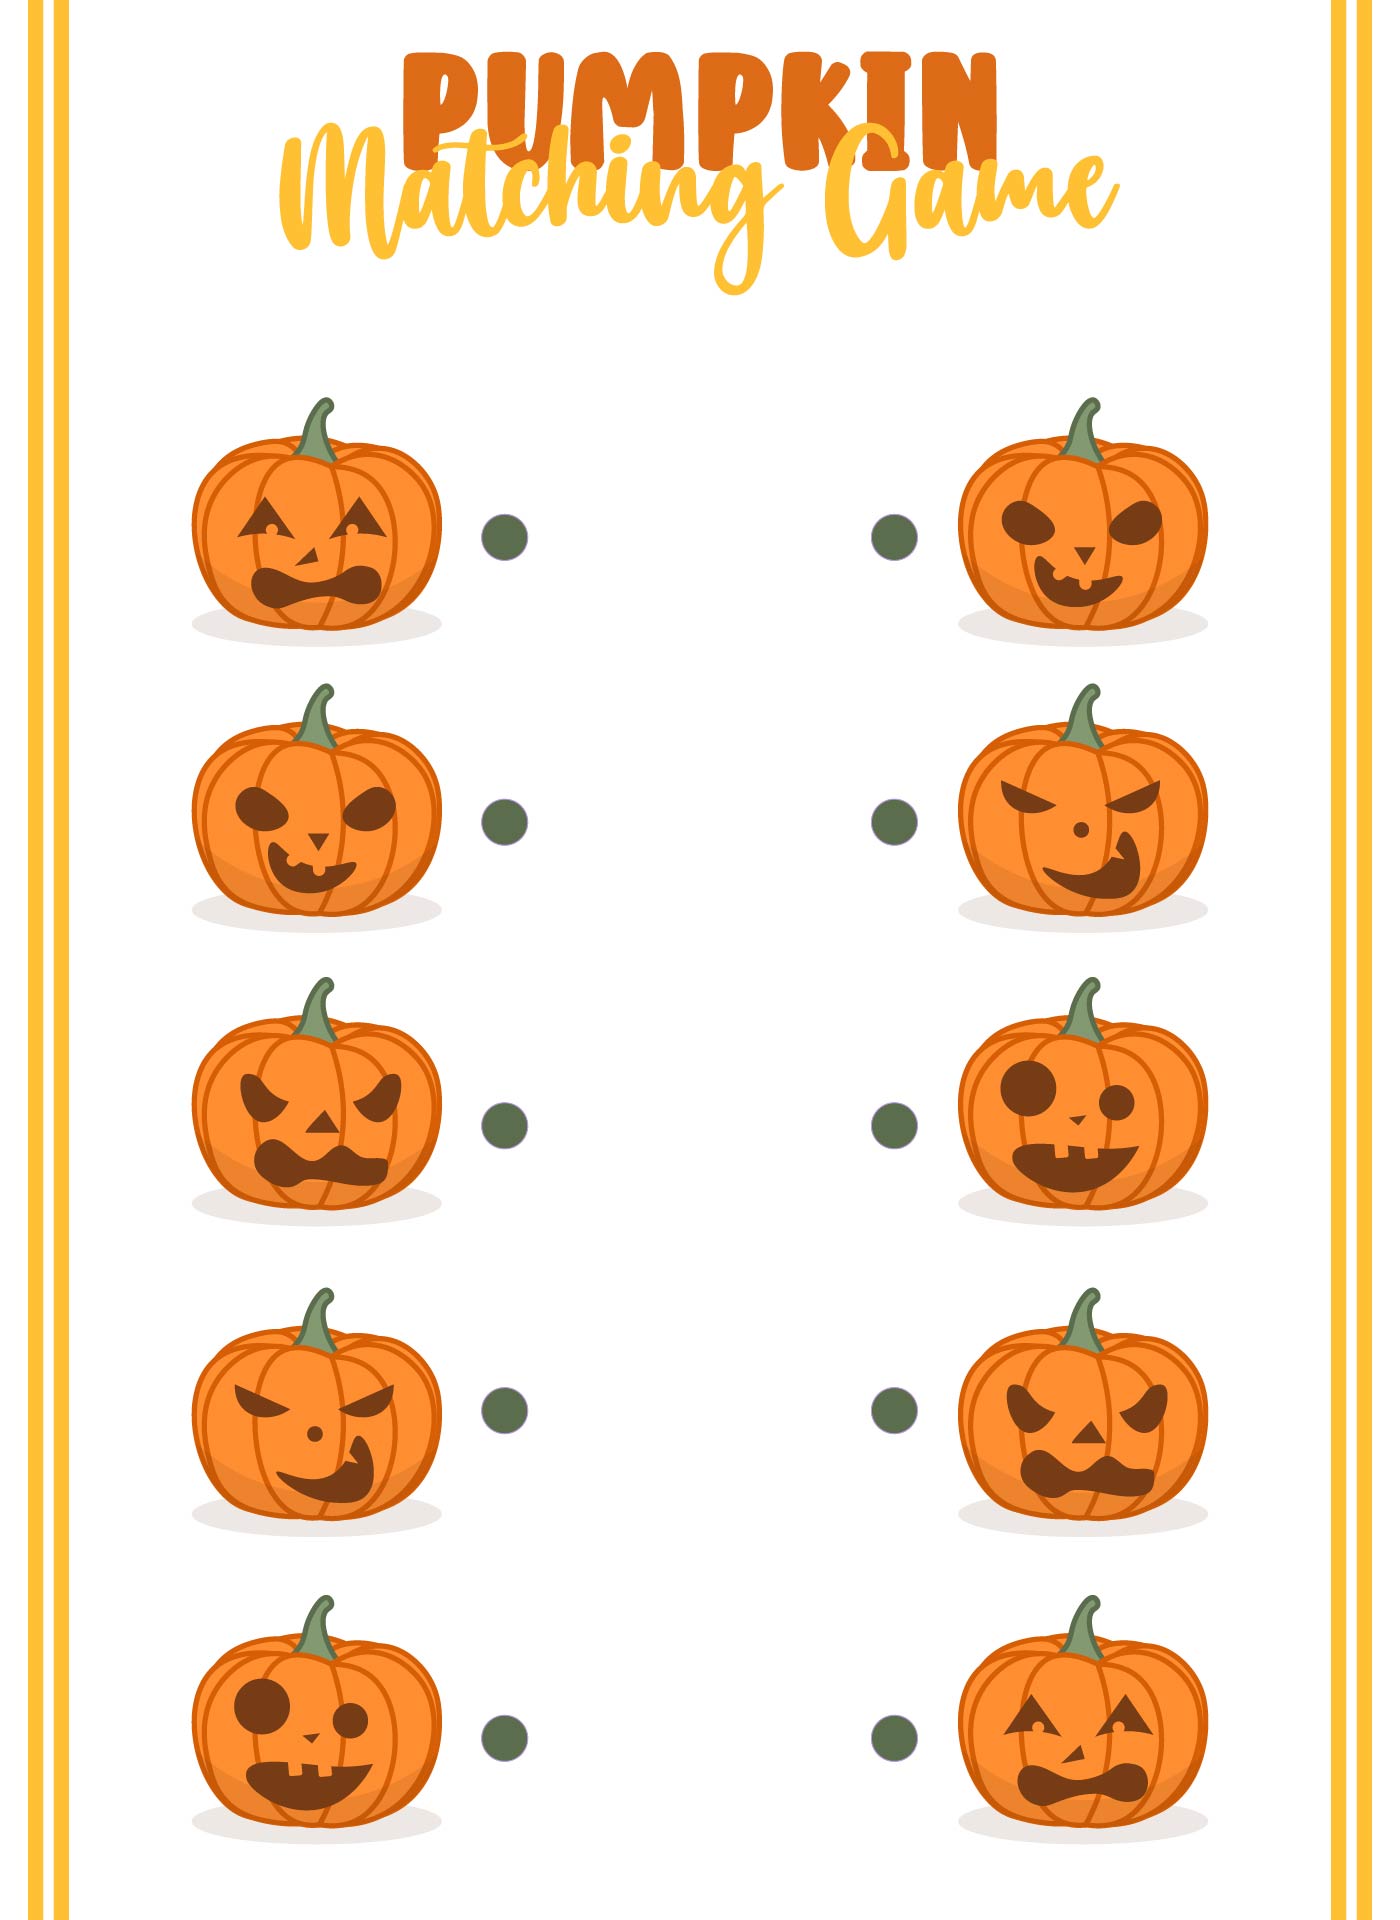 Pumpkin Matching Game Printable